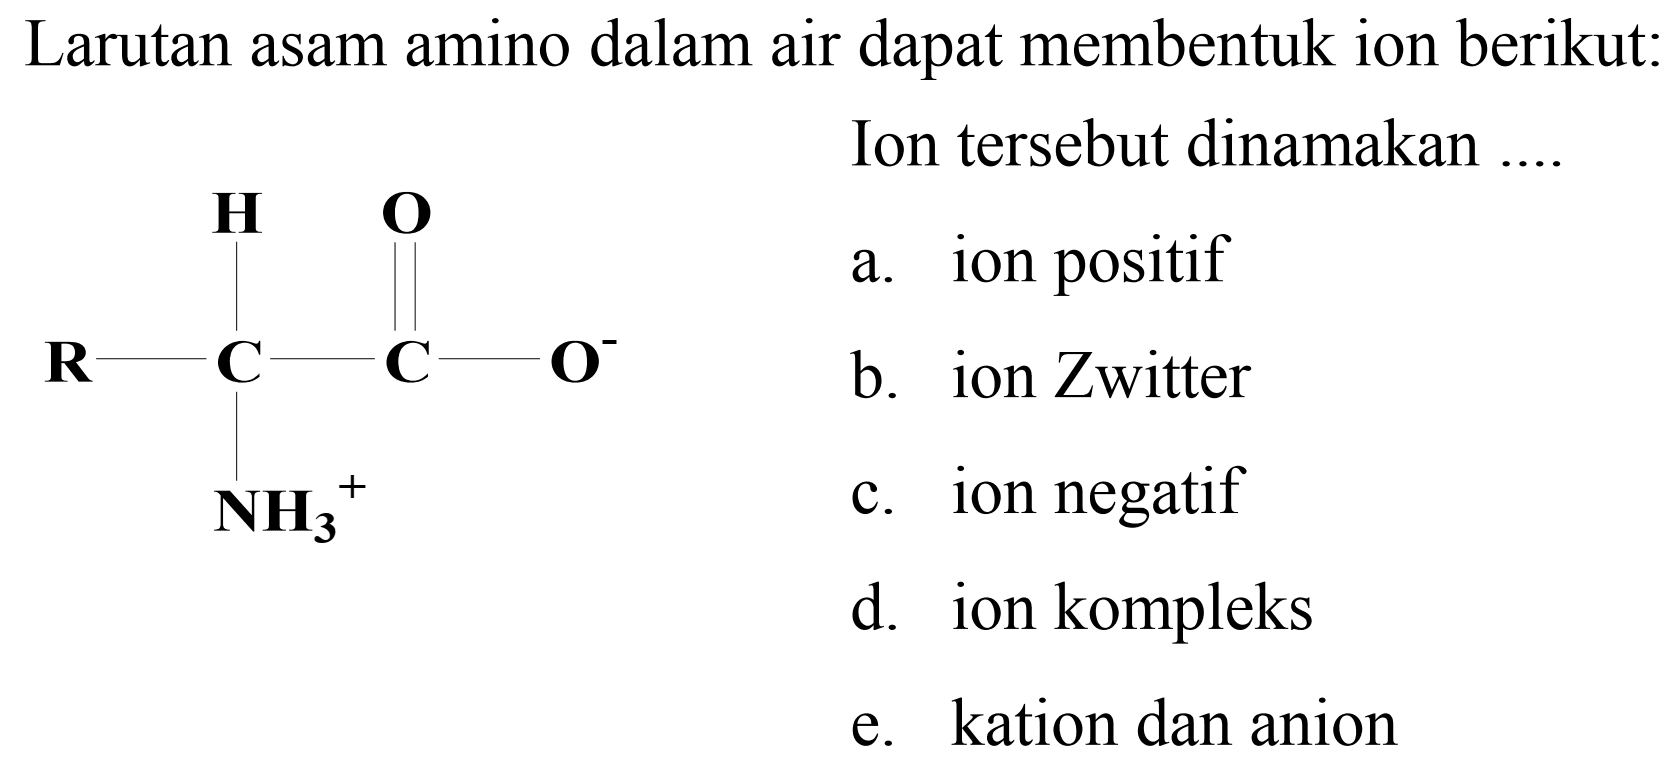 Larutan asam amino dalam air dapat membentuk ion berikut:
Ion tersebut dinamakan ....
a. ion positif
b. ion Zwitter
c. ion negatif
d. ion kompleks
e. kation dan anion